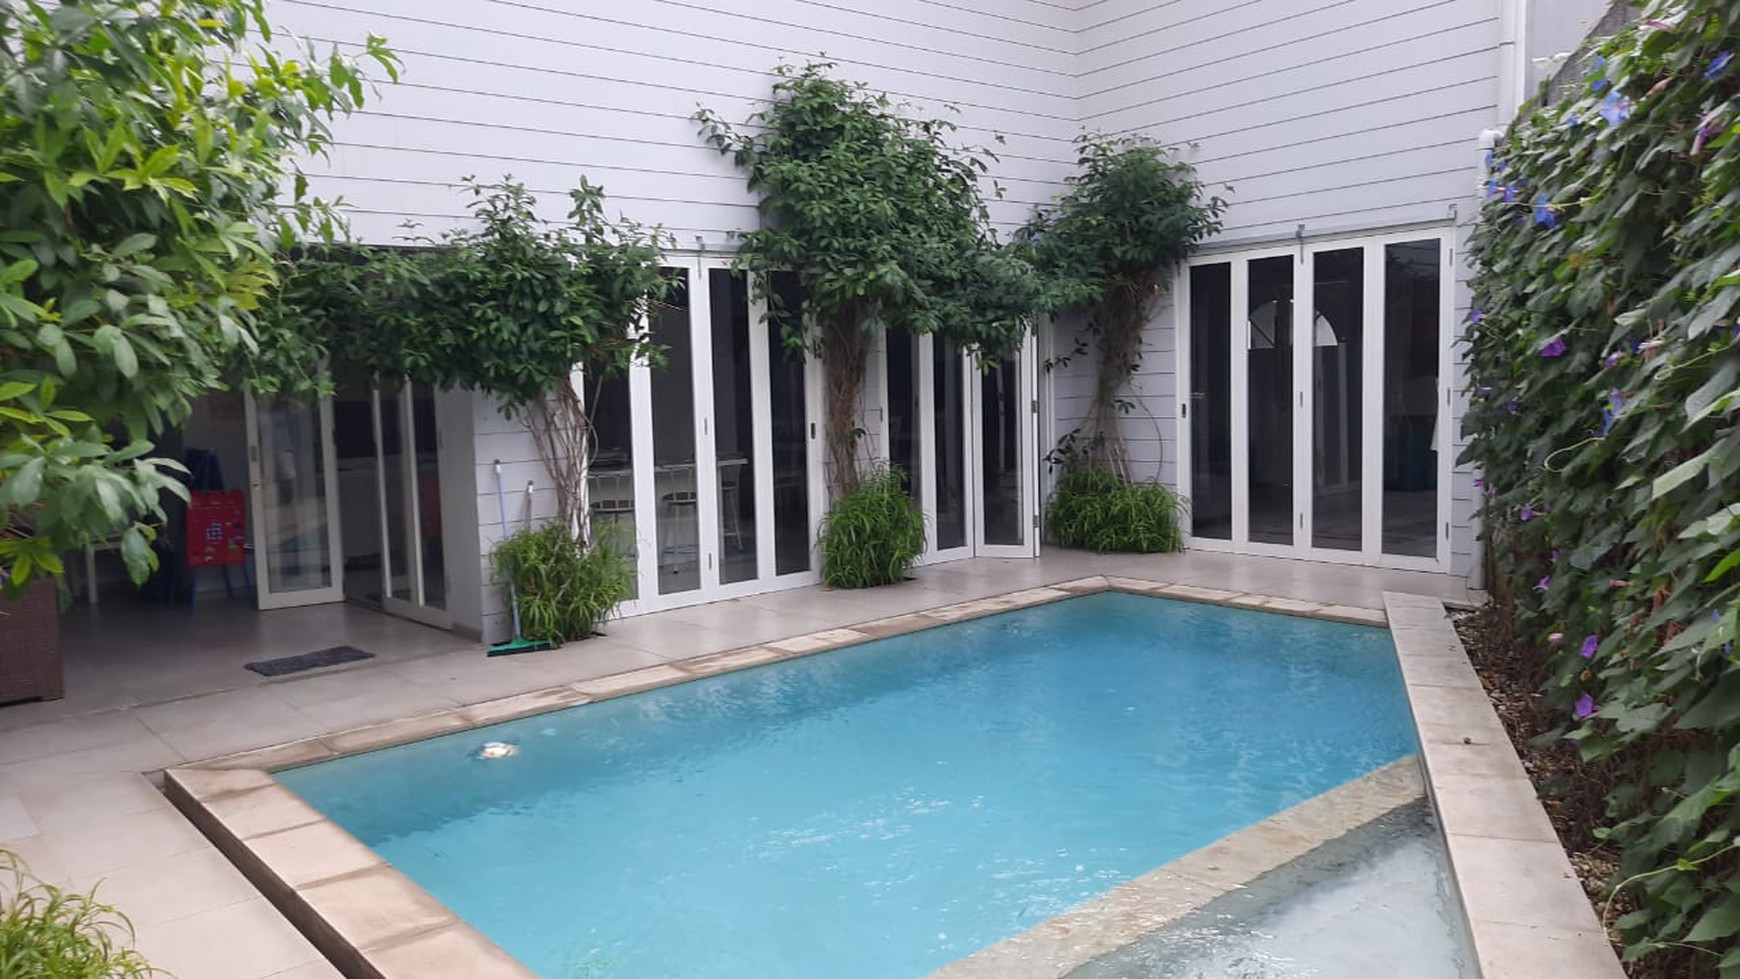 Rumah Keren Dengan Swimming Pool Dekat Bexchange Mall Harga Bagus Di Sawah Baru Ciputat.